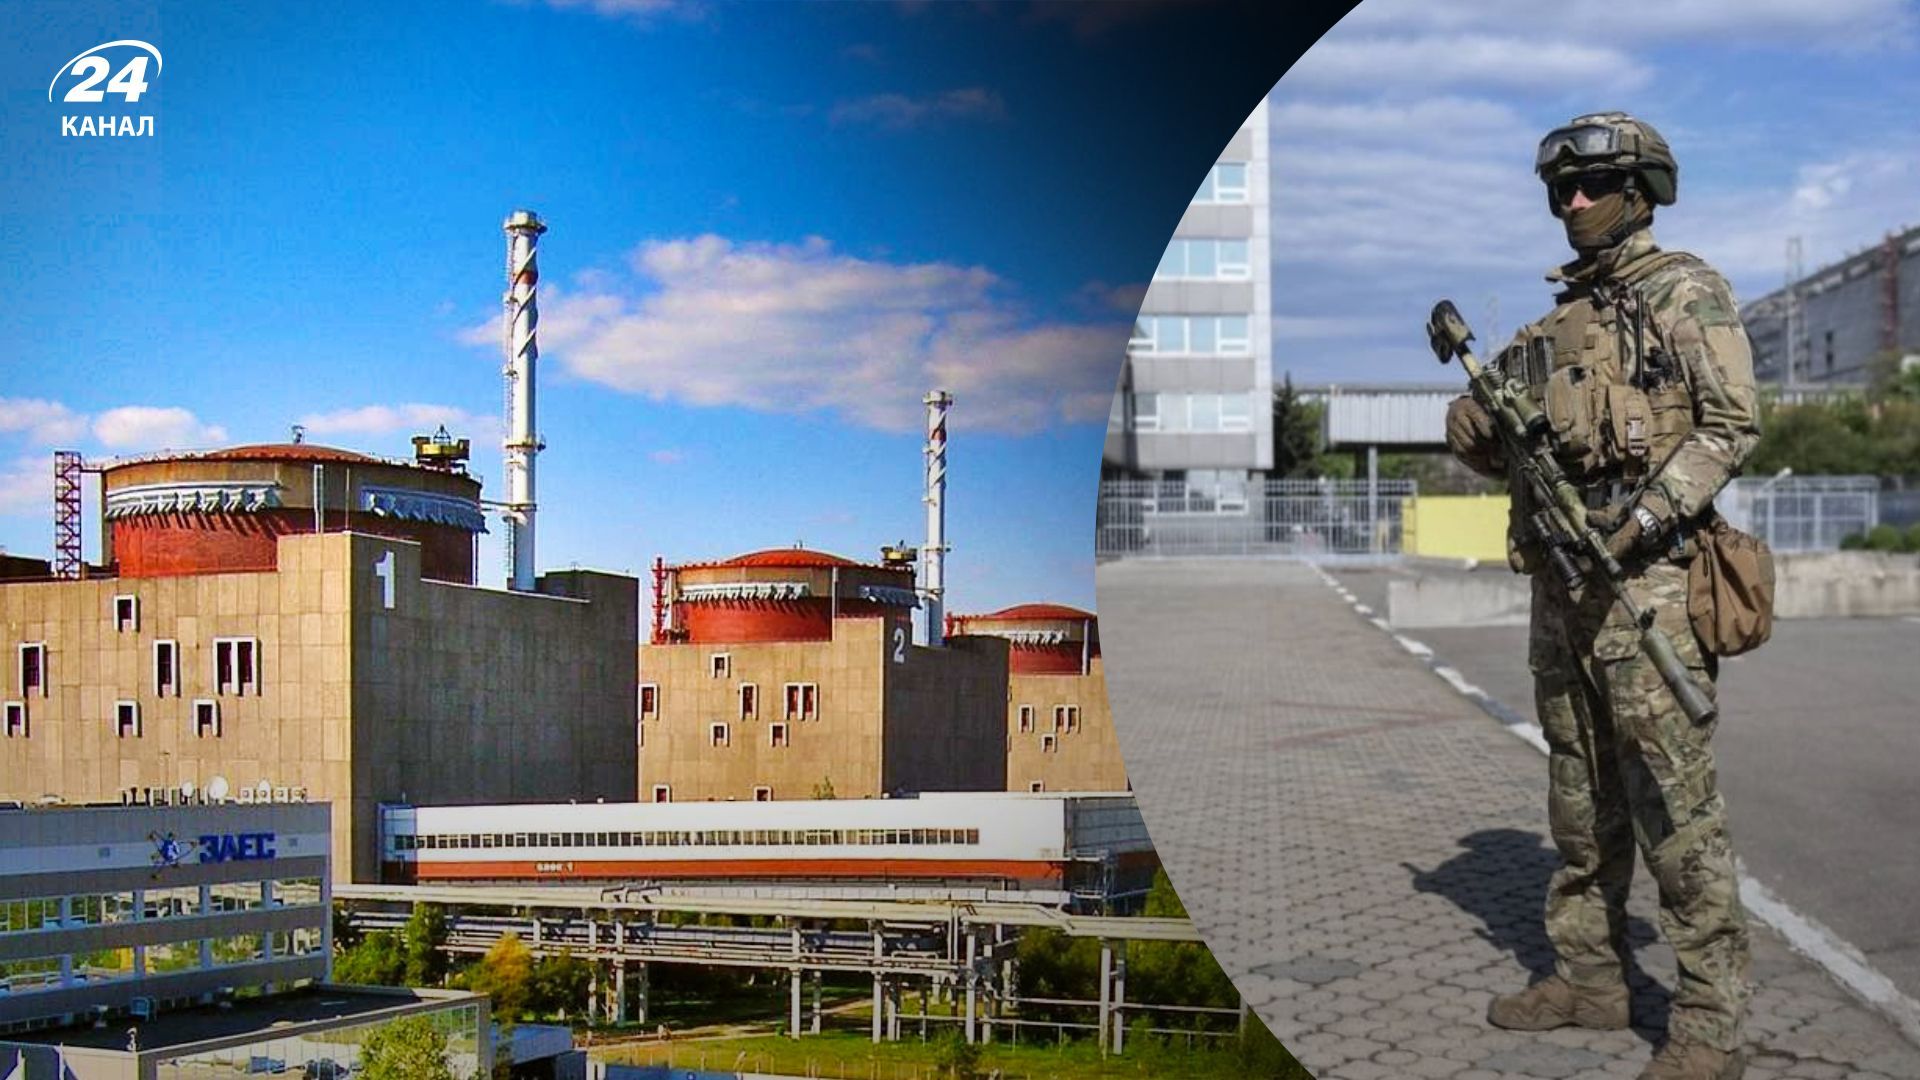 Запорожская АЭС новости сегодня - в последние дни Россия вывела часть войск с ЗАЭС - 24 Канал